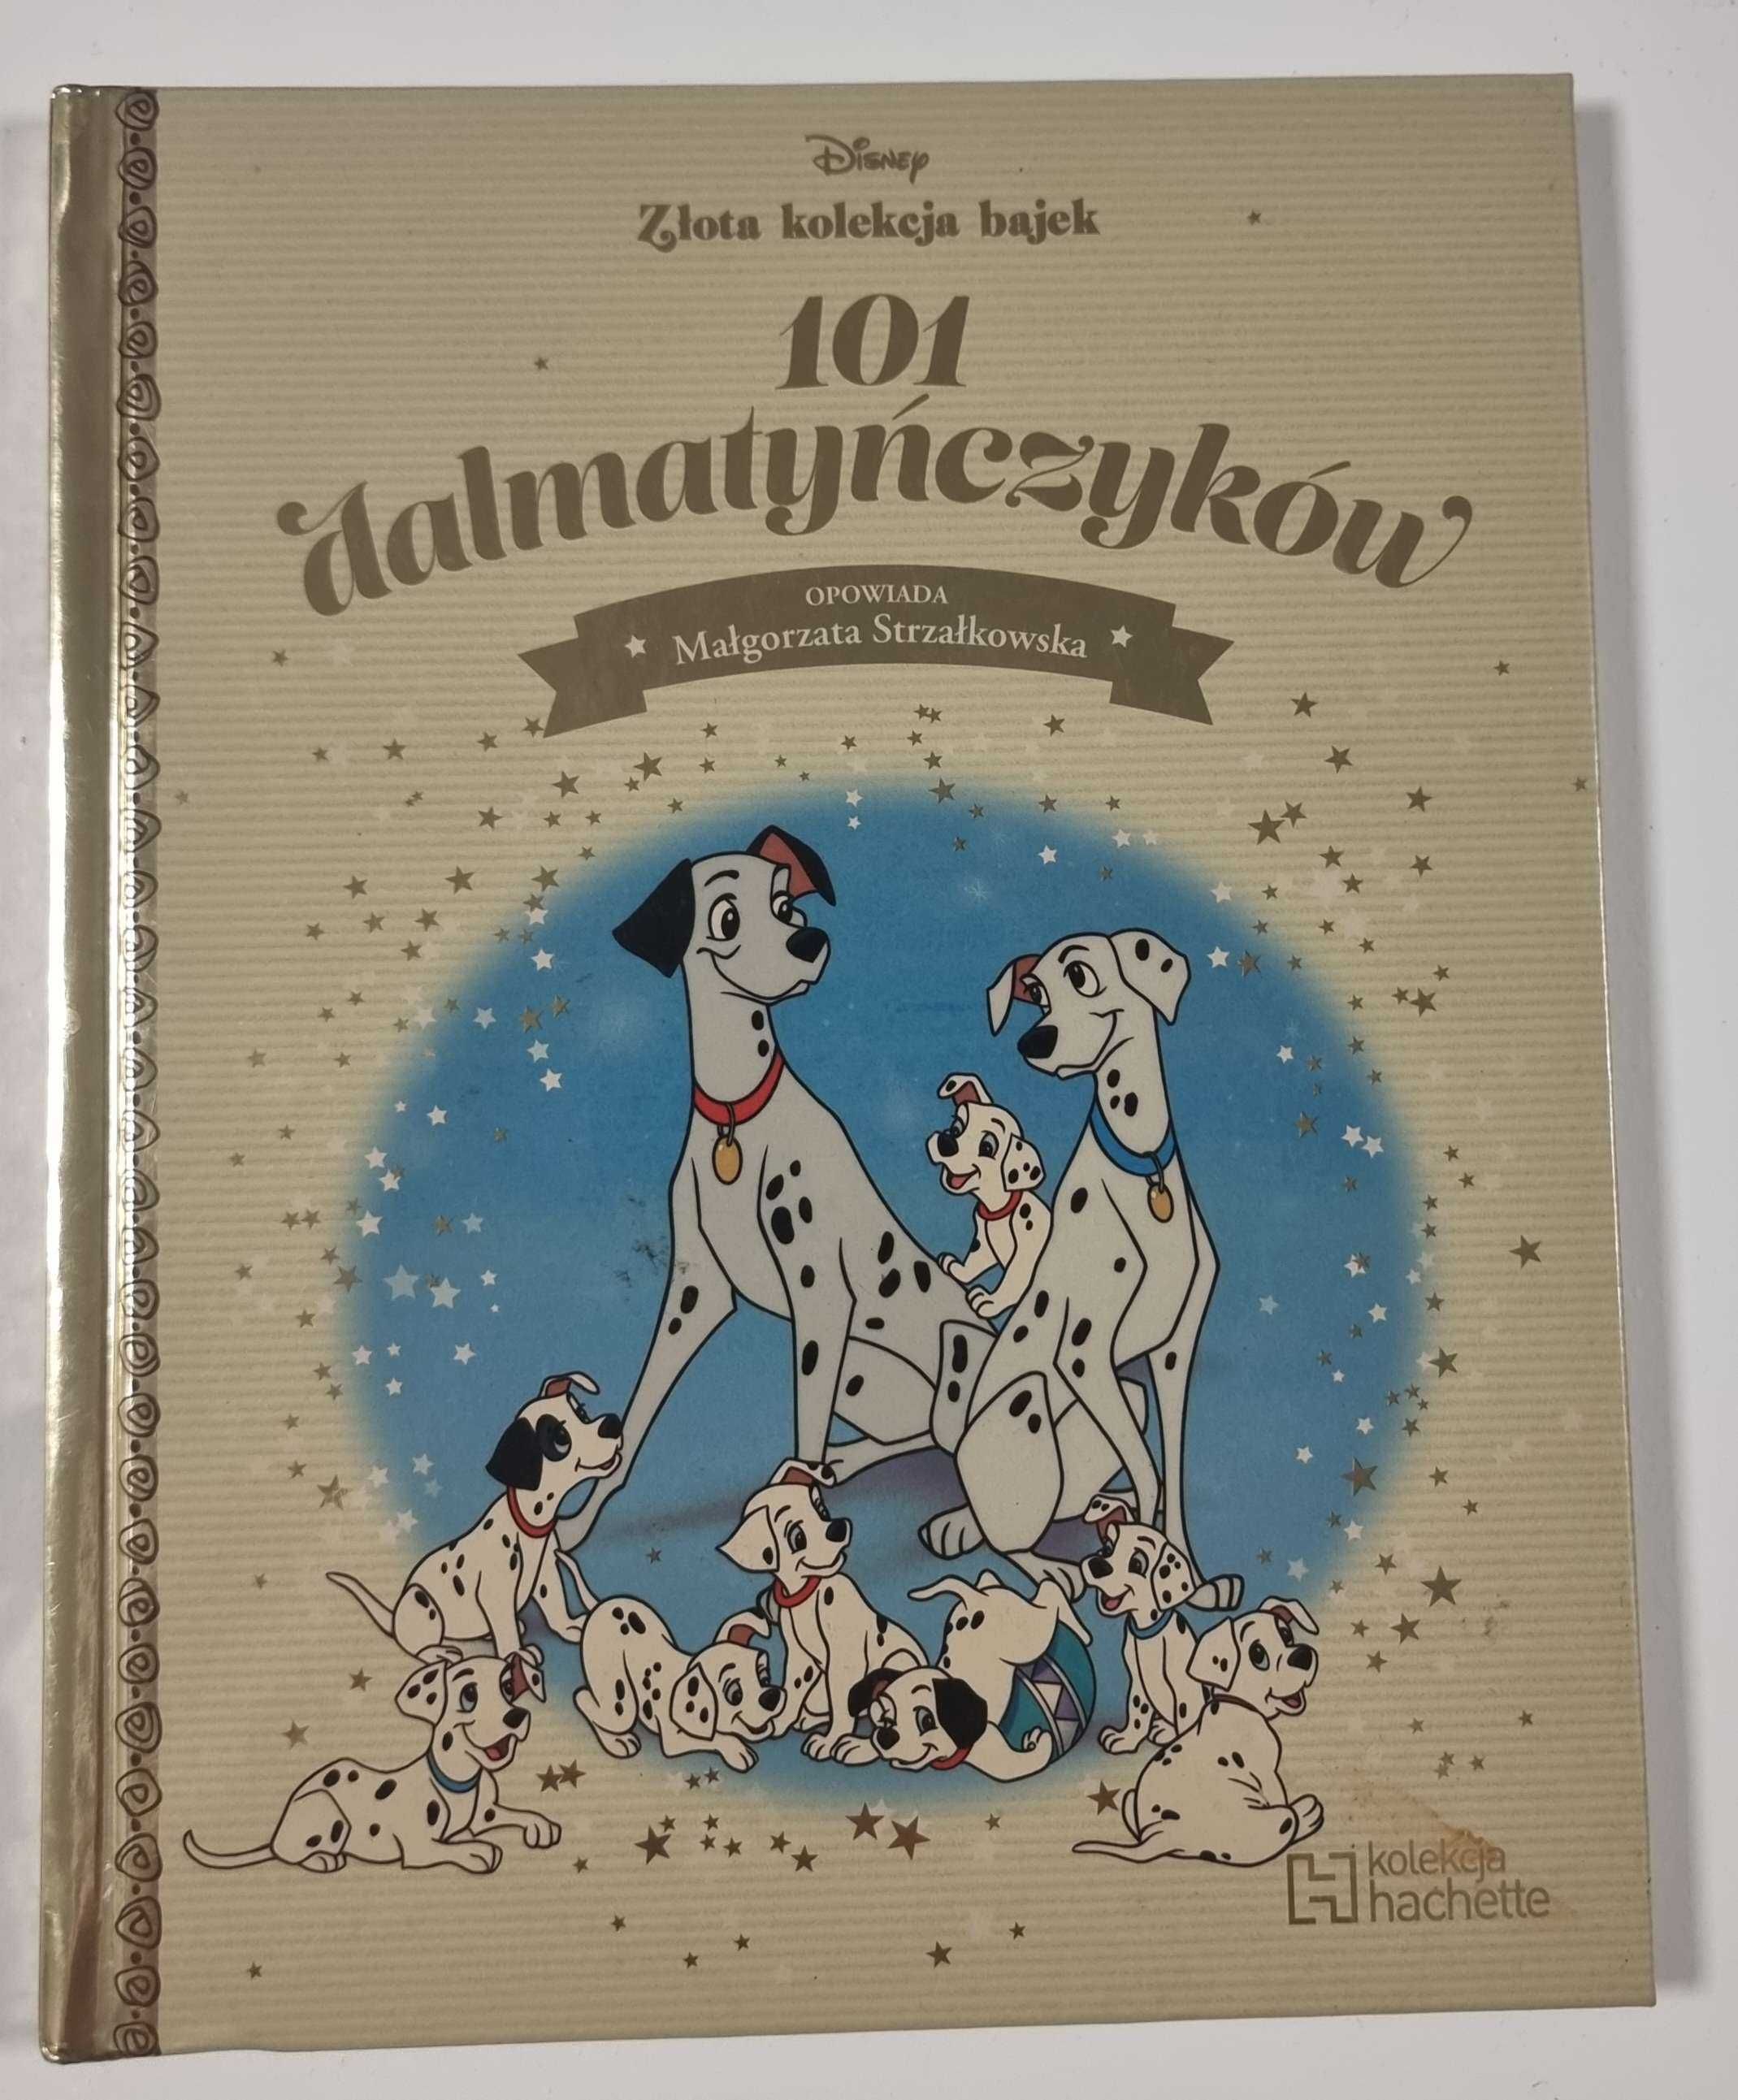 Złota kolekcja bajek Disney 101 Dalmatyńczyków